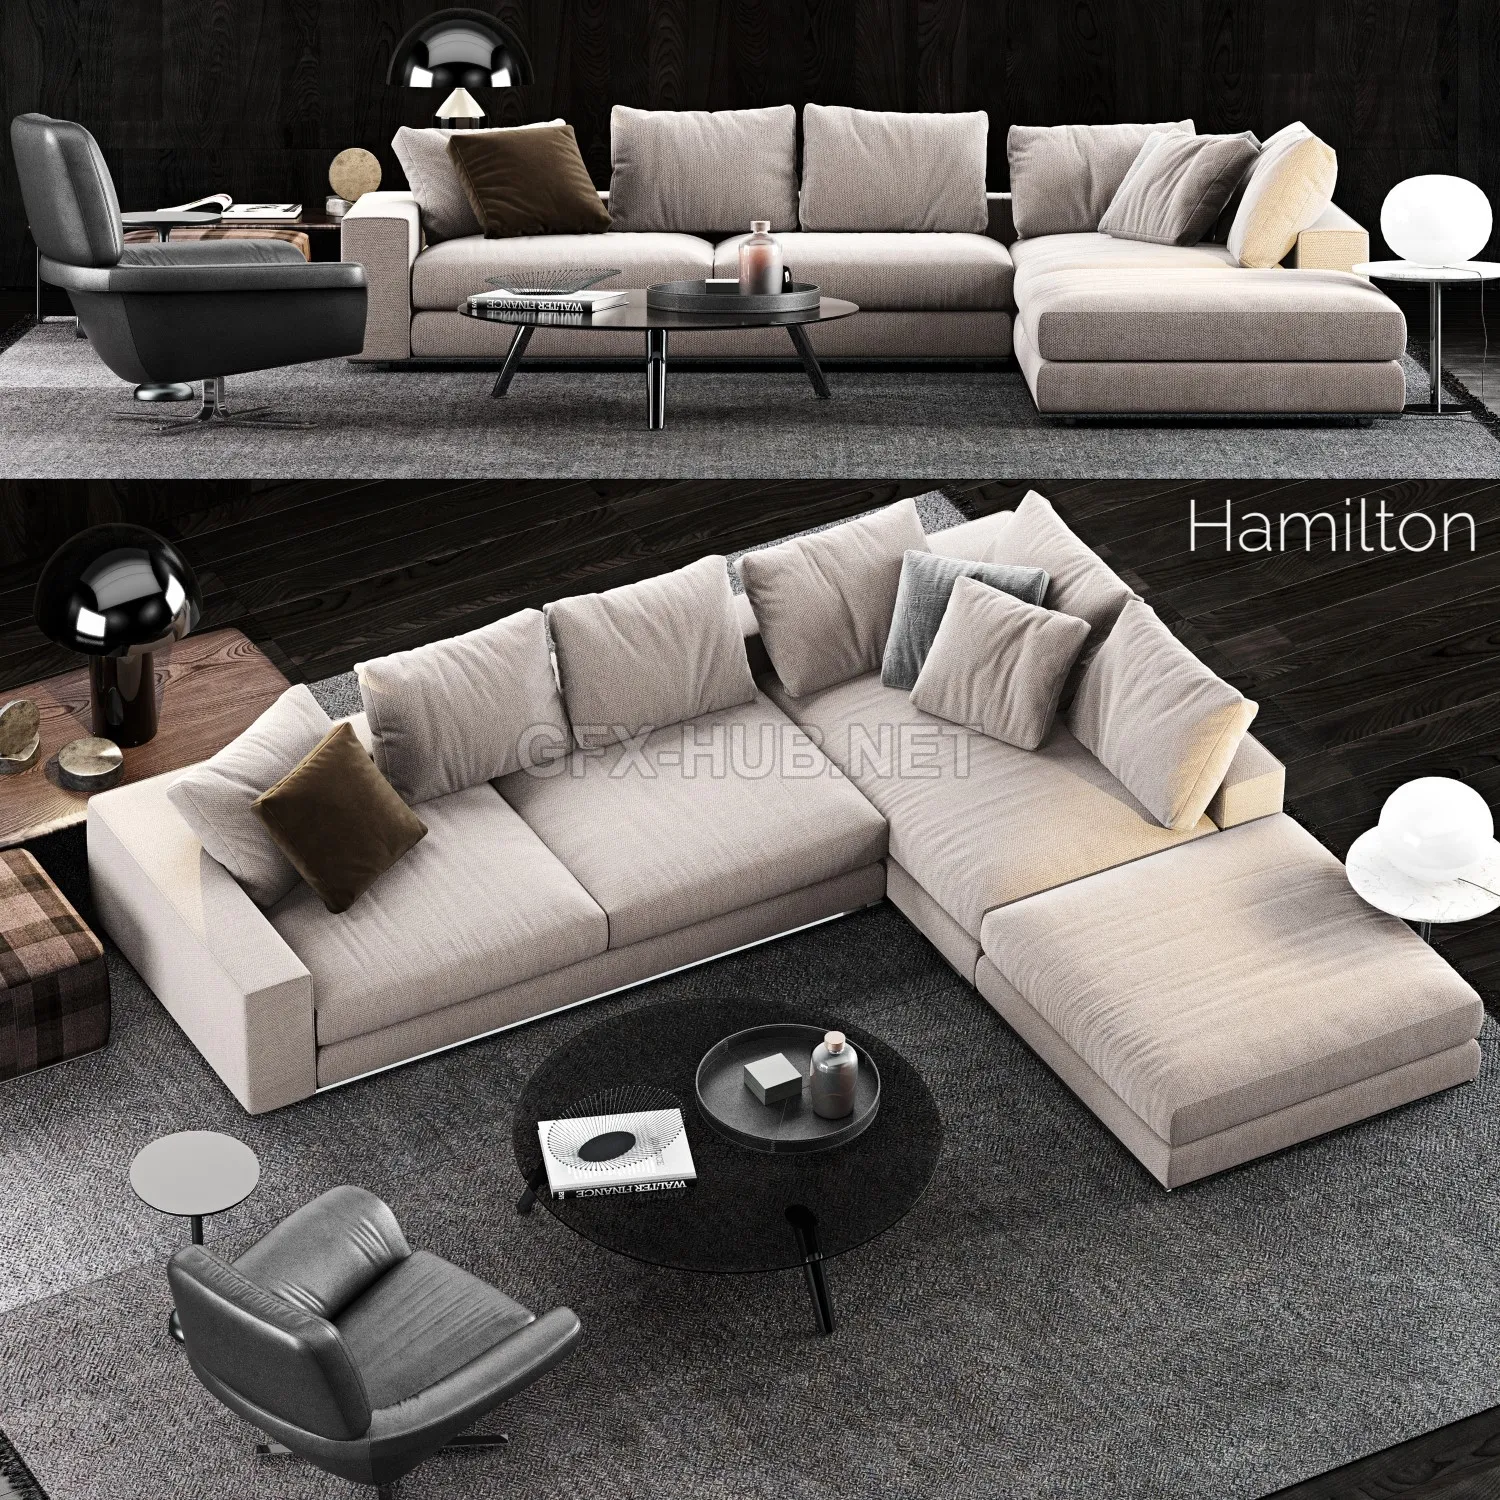 Hamilton Sofa 5 by Minotti (maxobj) – 216035